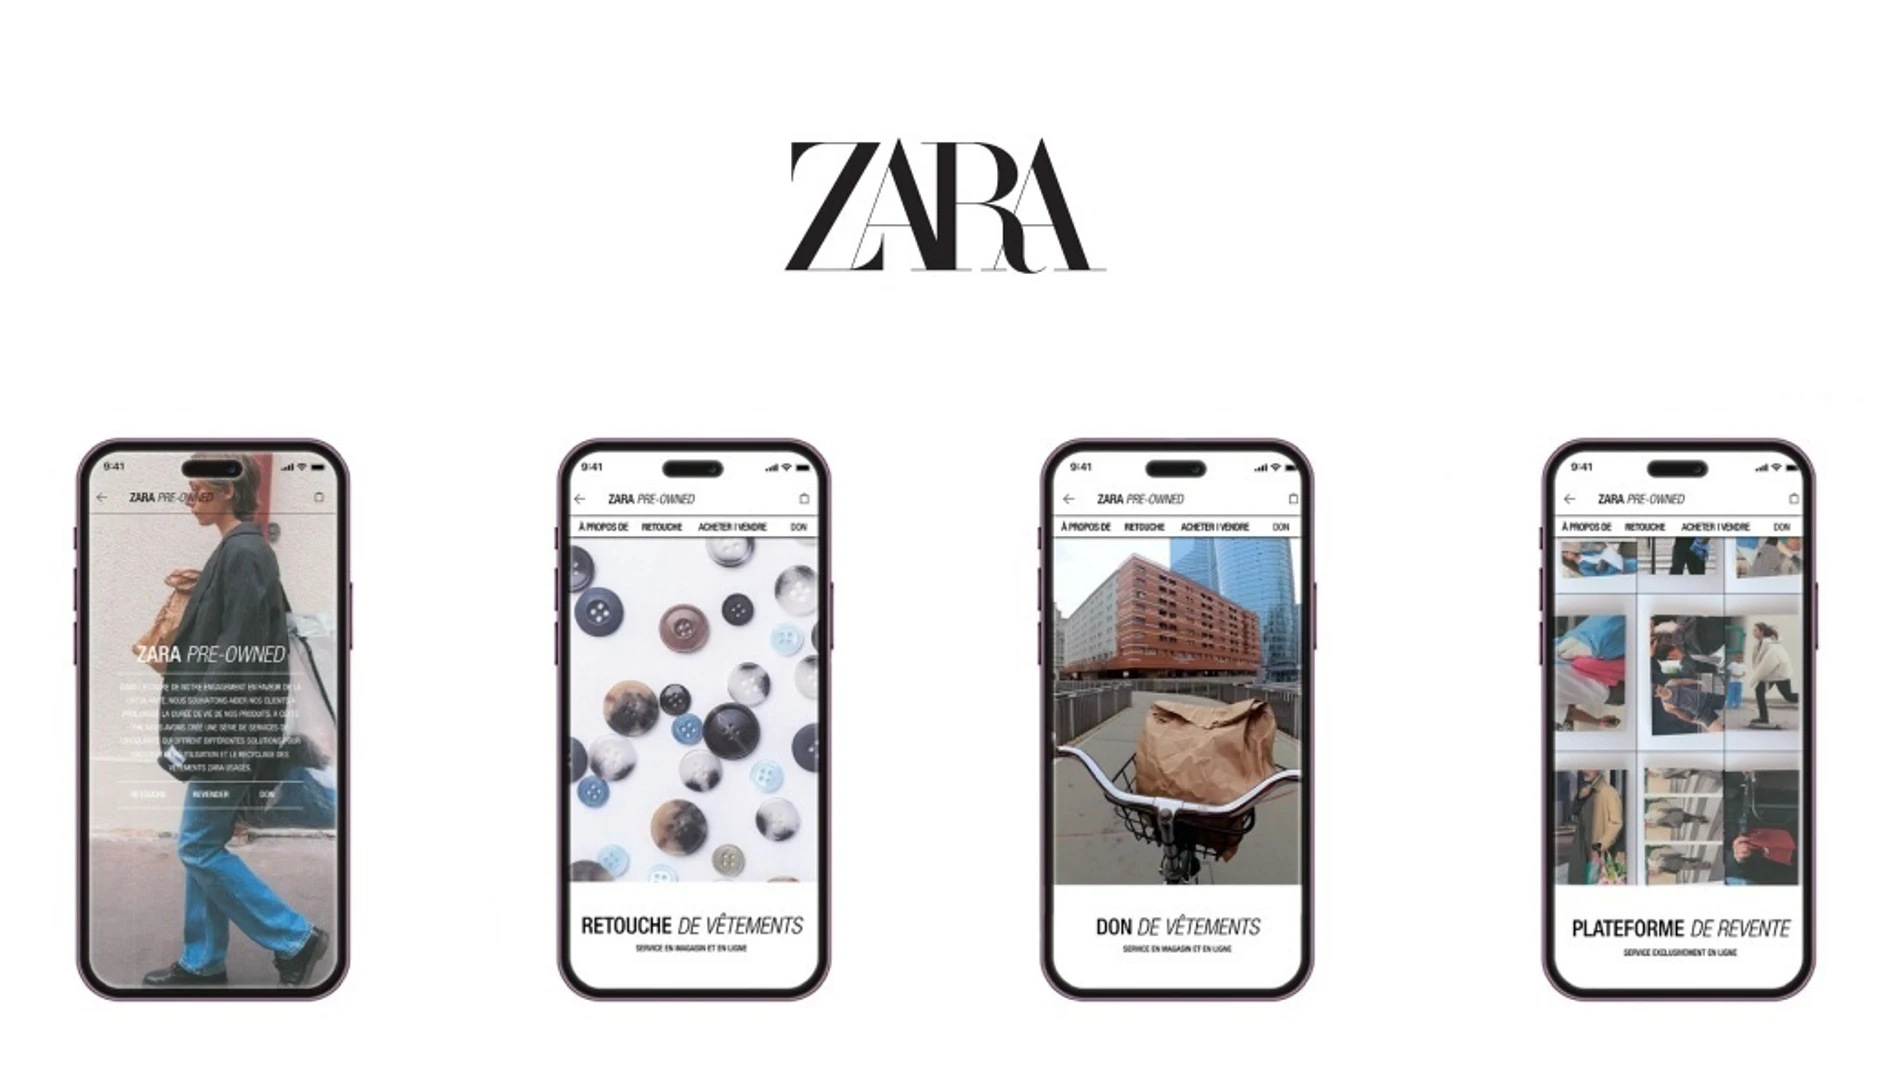 Ya está aquí 'Zara Pre-owned', o lo que es lo mismo, ya puedes vender,  donar o reparar tu ropa a través de la plataforma